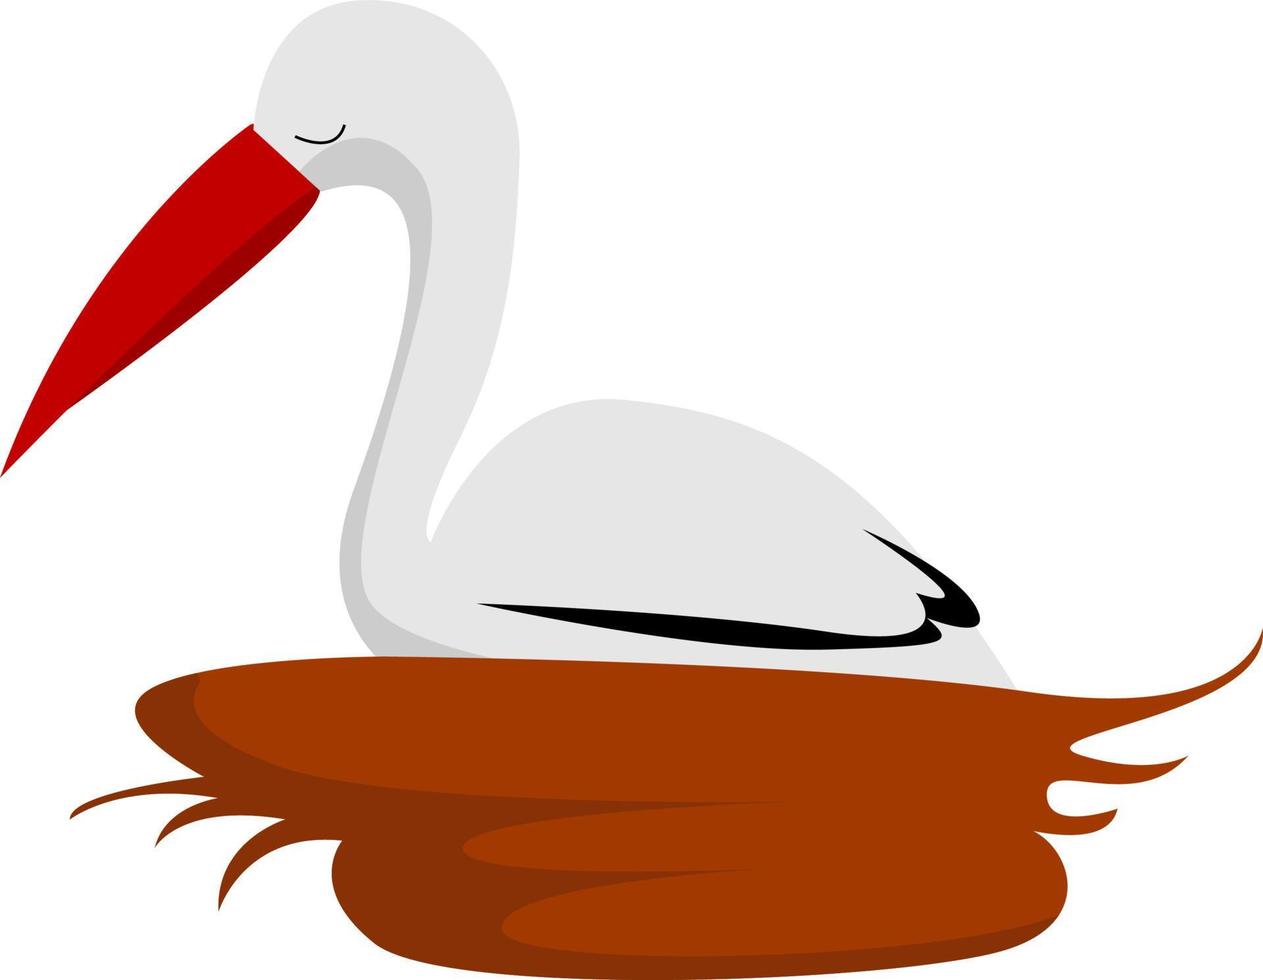 Storks nest, illustration, vector on white background.